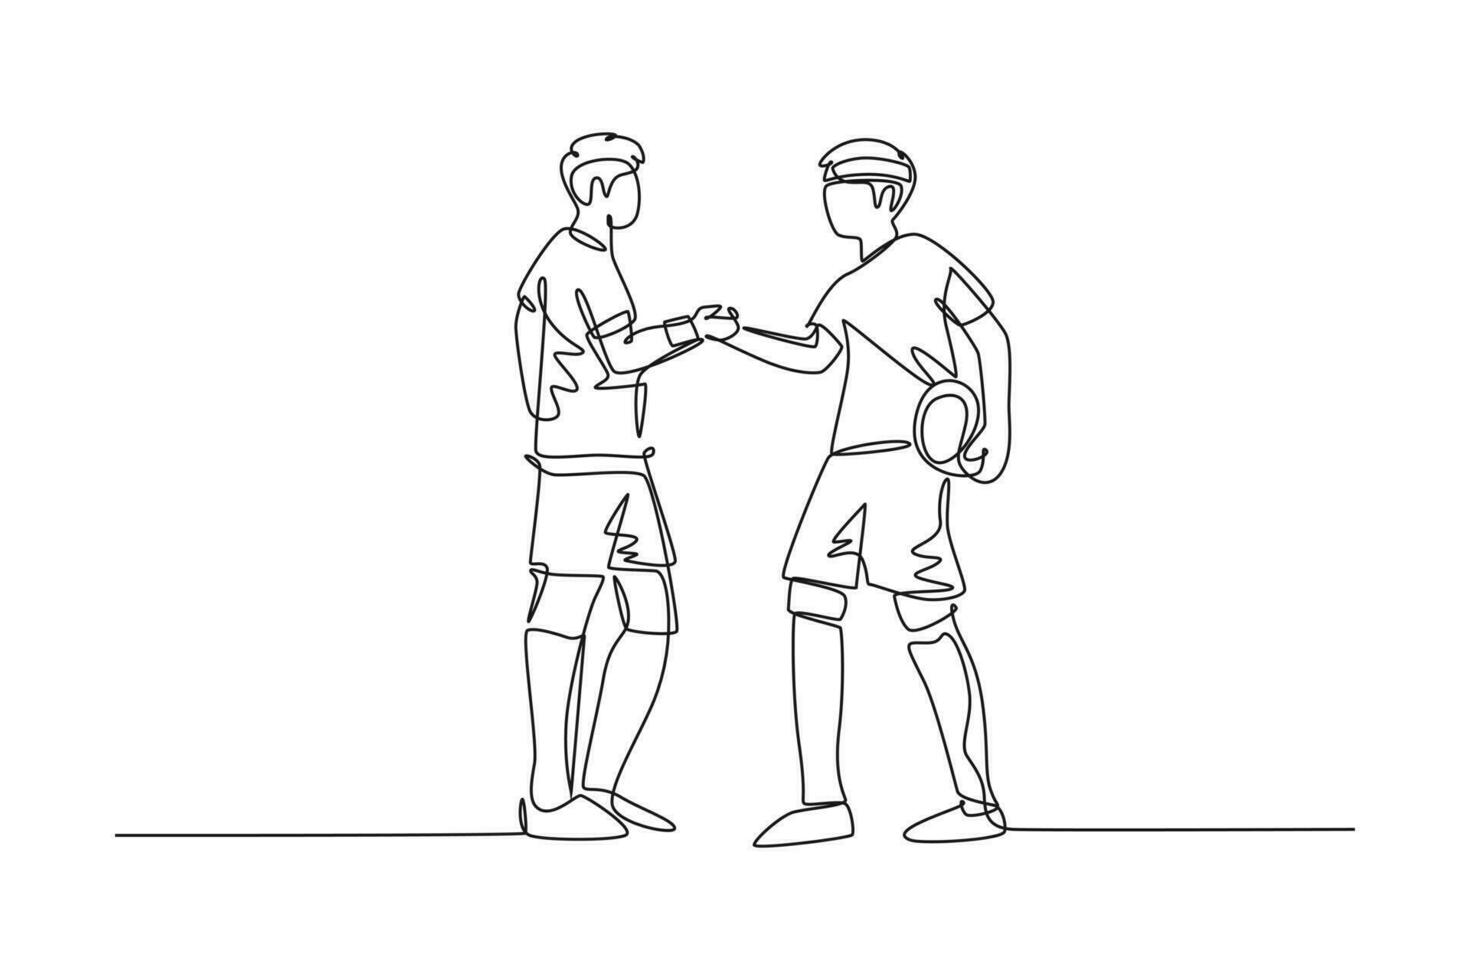 solteiro 1 linha desenhando dois futebol jogador trazer bola e aperto de mãos para mostrar espírito esportivo antes iniciando a corresponder. respeito dentro futebol esporte. contínuo linha desenhar Projeto gráfico vetor ilustração